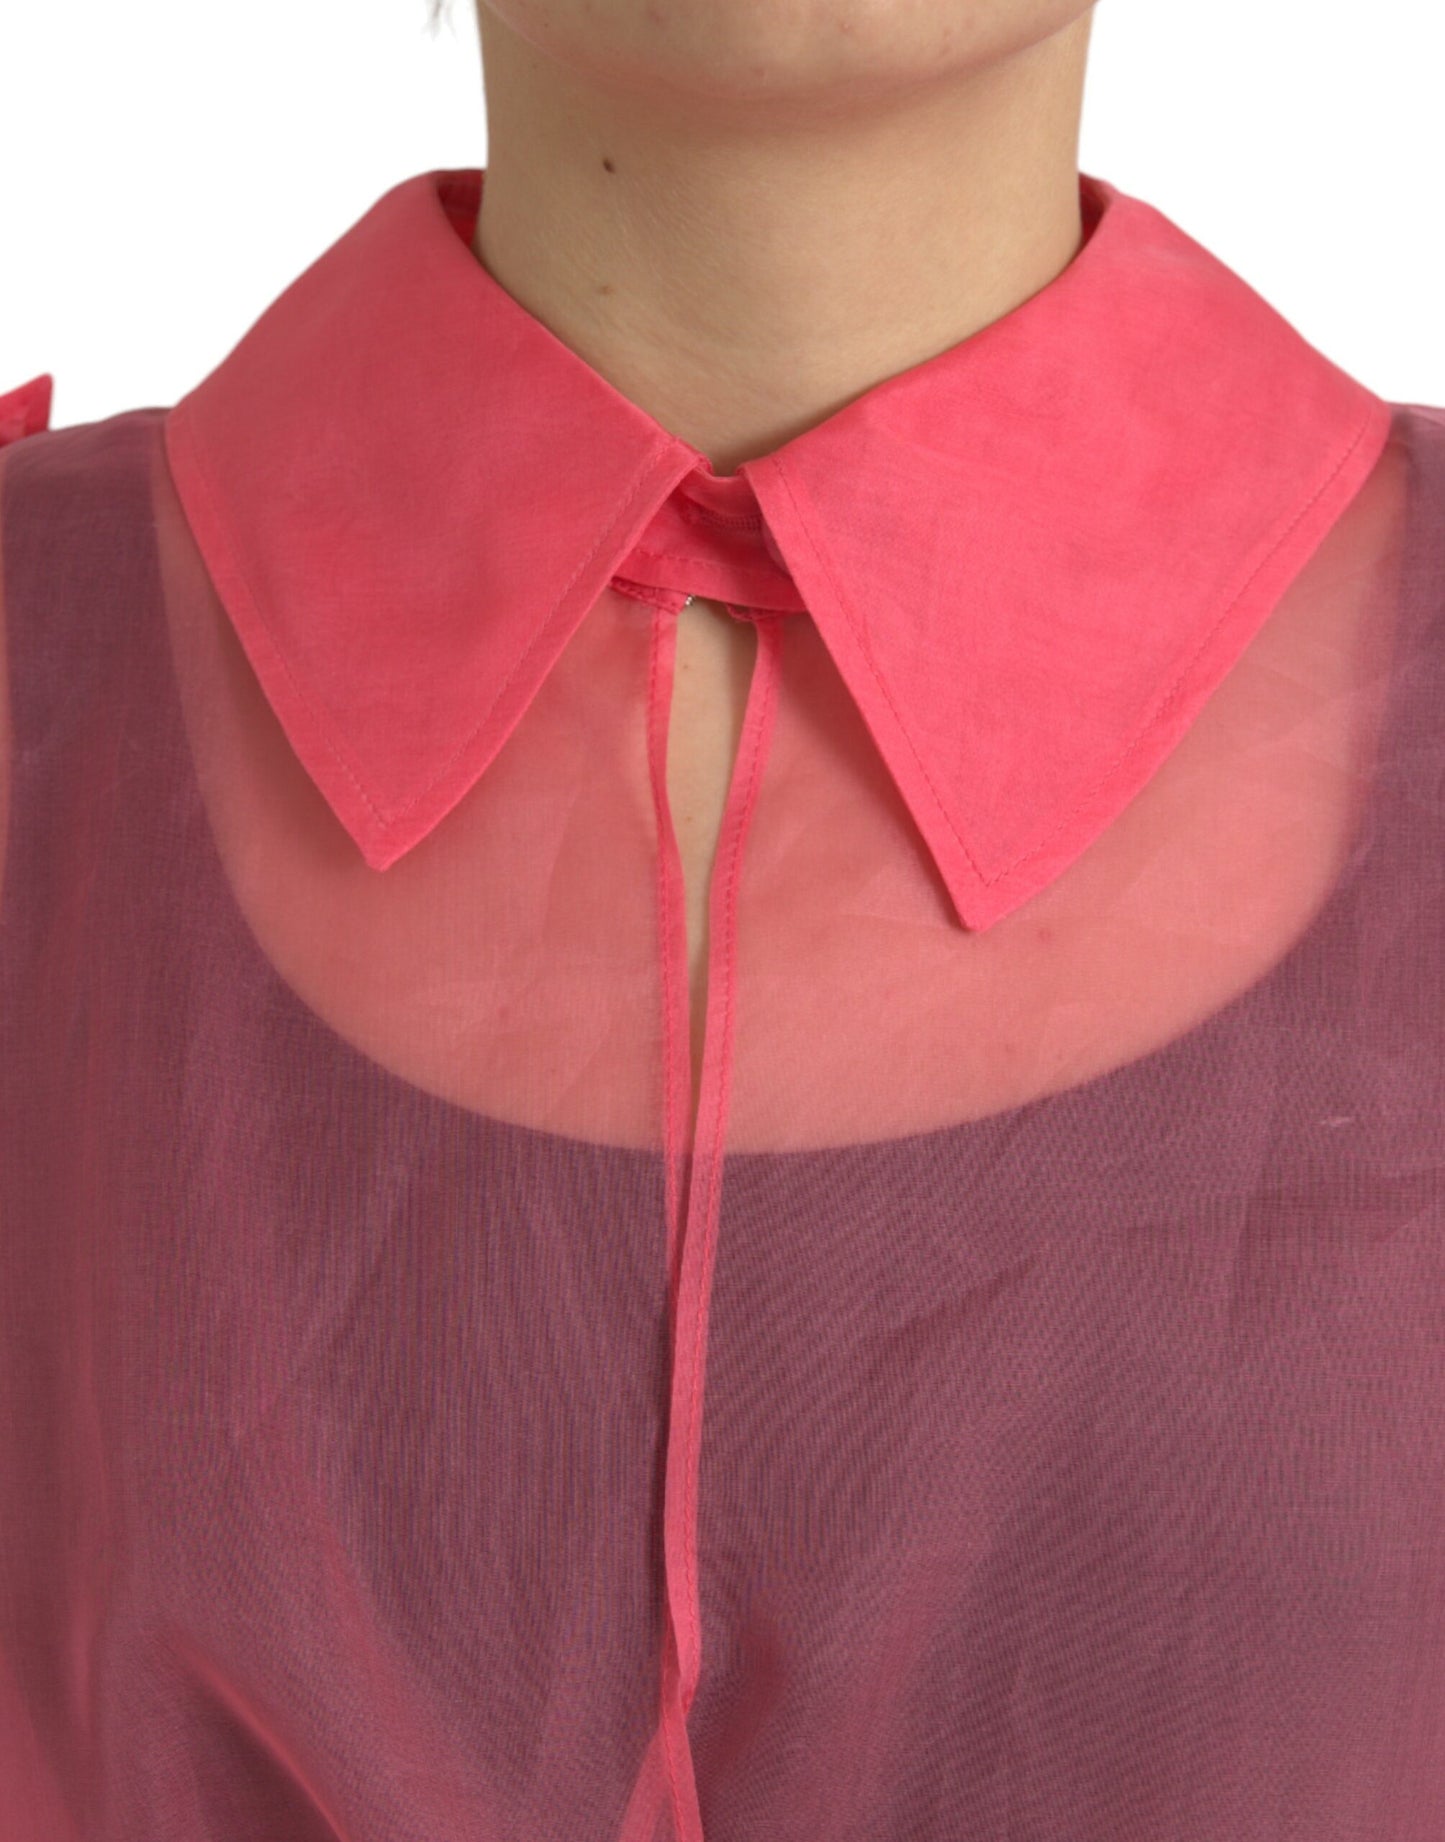 Elegant Pink Silk Long Jacket